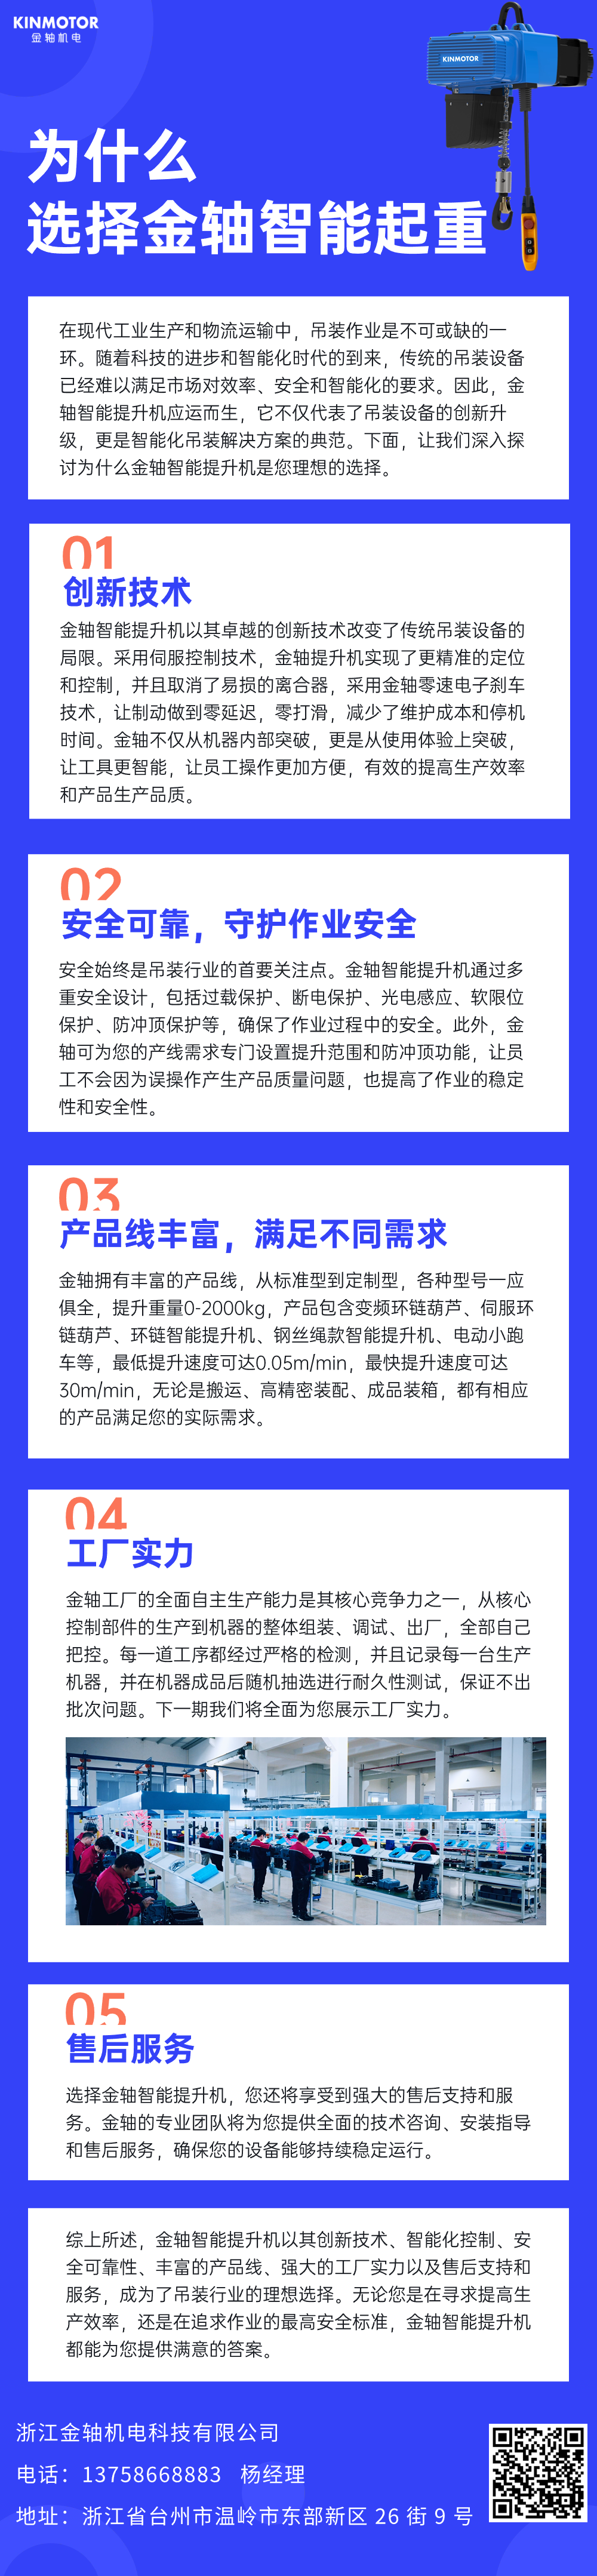 时政民生政策热点政务新闻文章长图.png